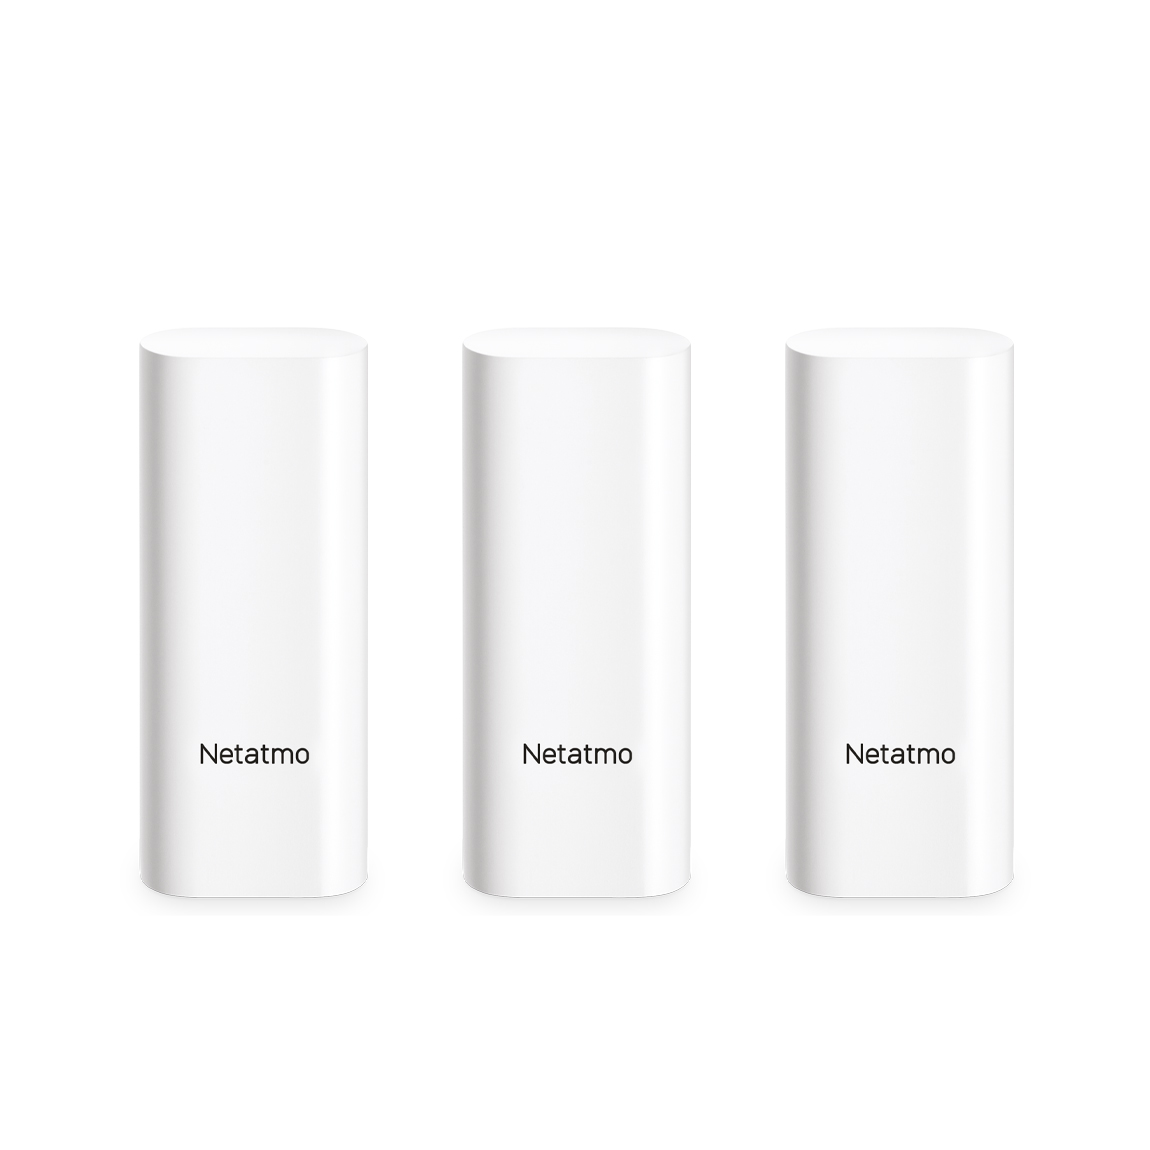 Netatmo Smarte Tür- und Fenstersensoren 3er-Set - Weiß